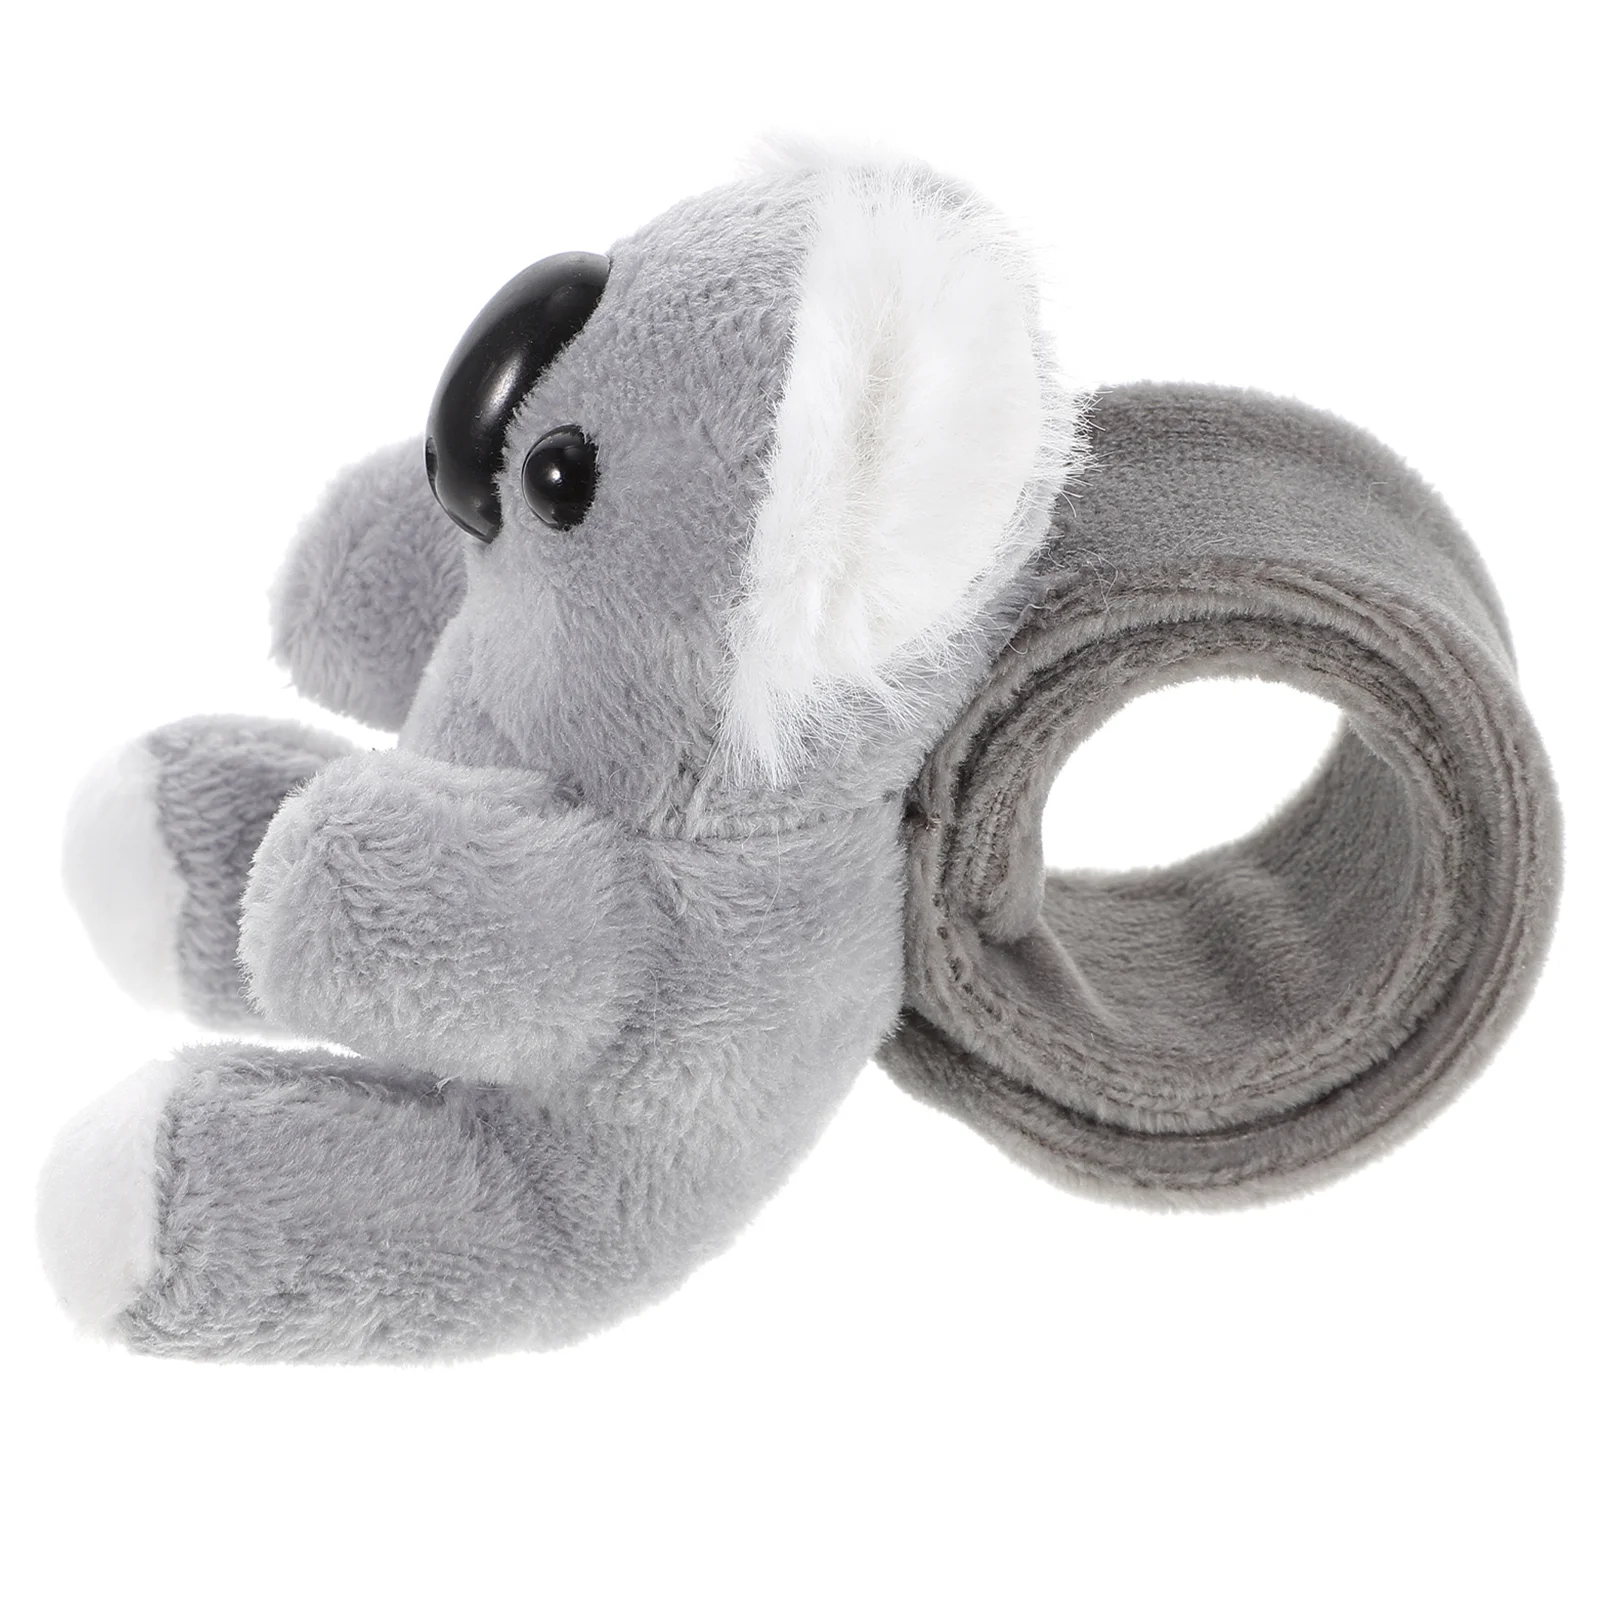 

Kids Bulk Toys Plush Ring Slap Bracelets Birthday Party Favors Koala 8cm Stuffed Animals Girl